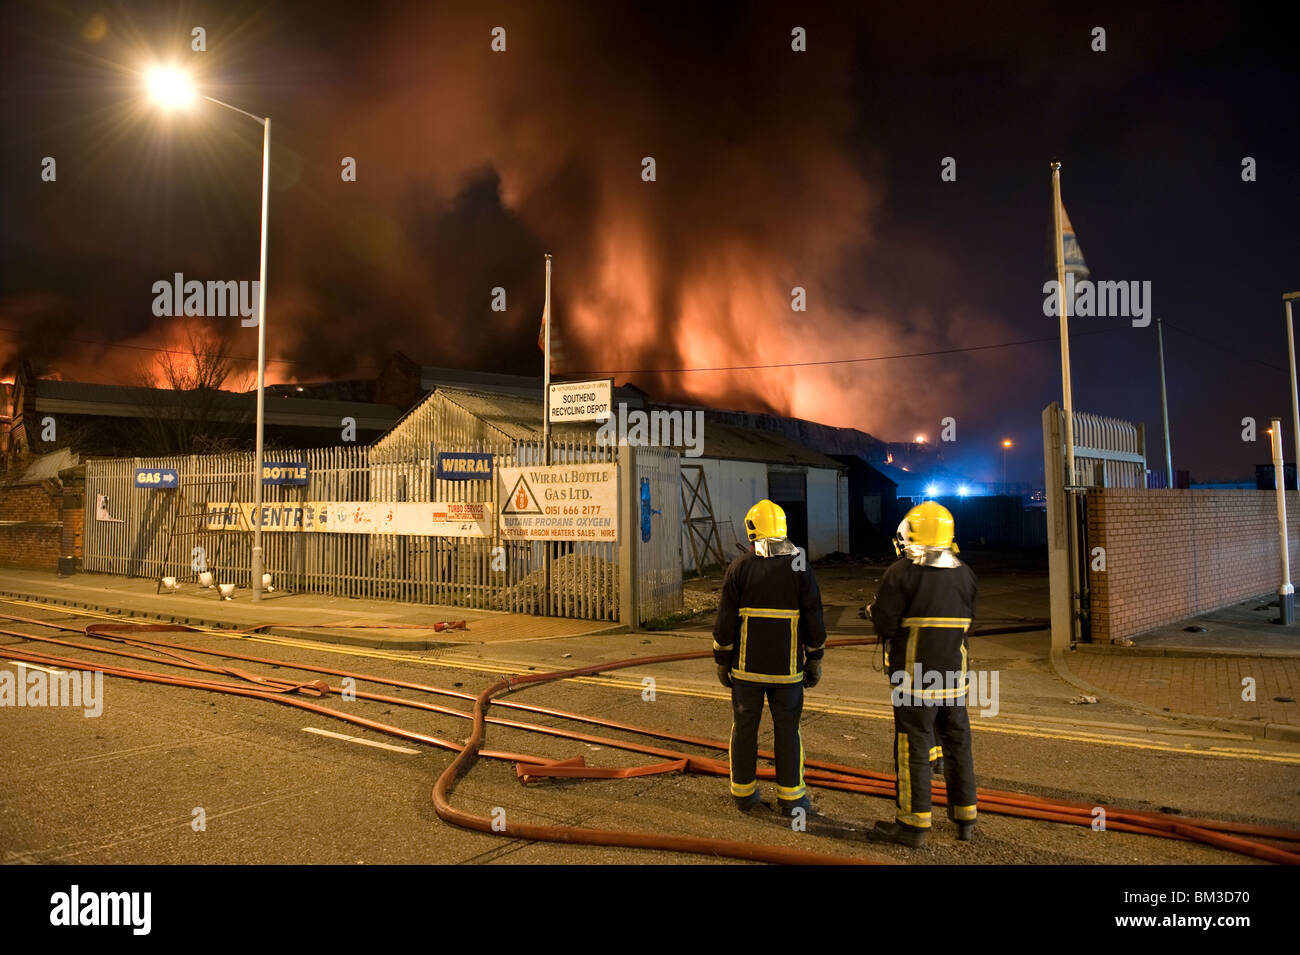 Große Fabrik Lager in Brand in der Nacht mit vielen Flammen und Rauch Stockfoto